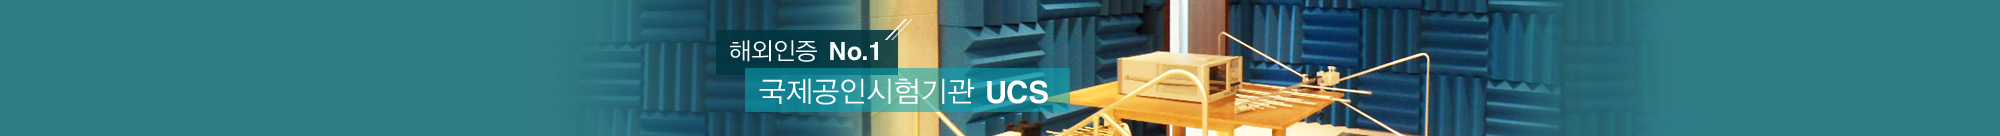 해외인증 NO.1 국제공인시험기관 UCS